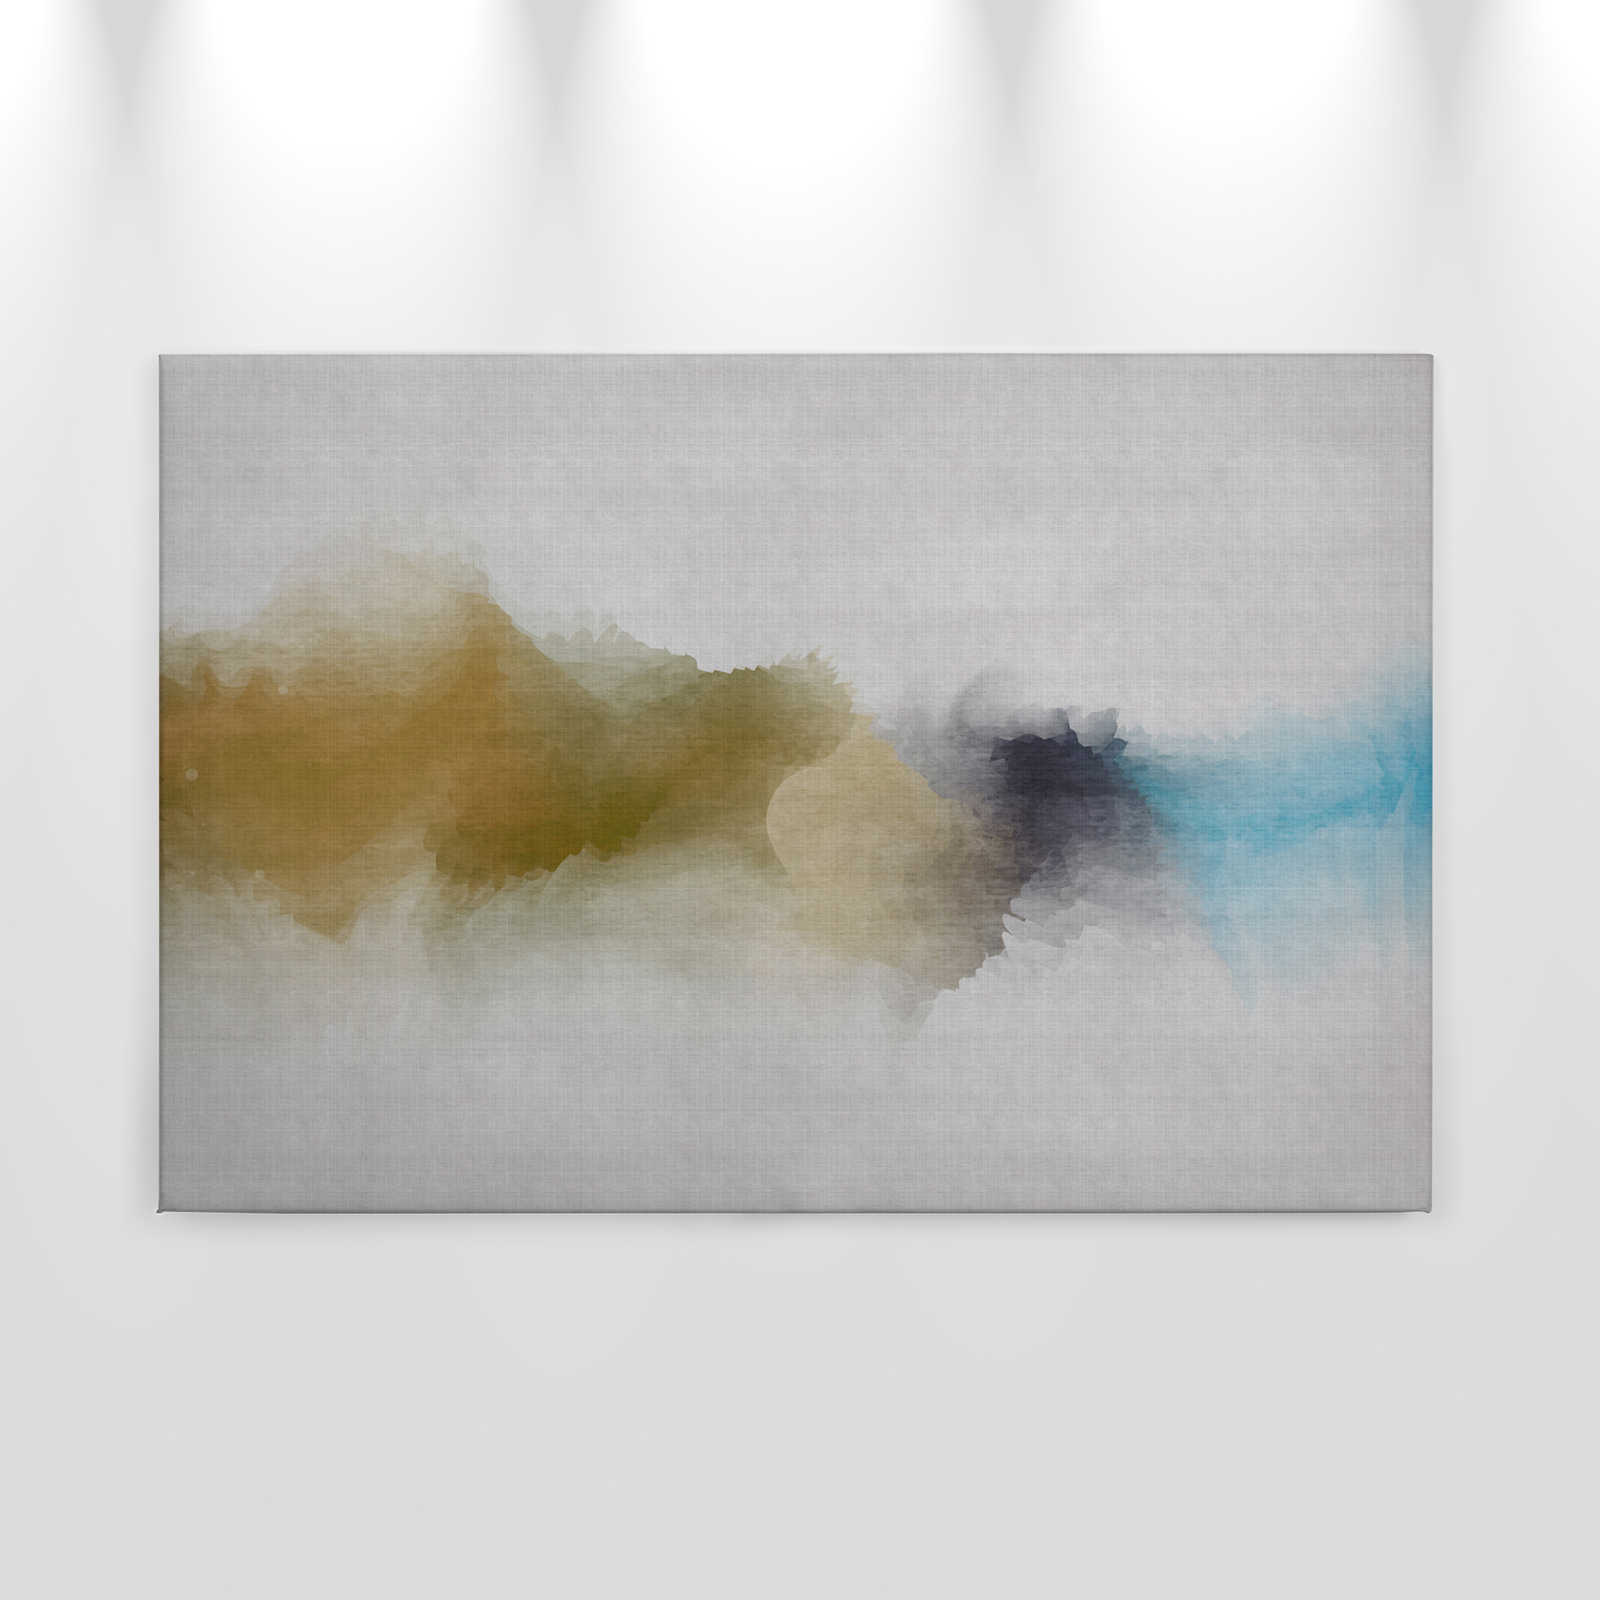             Daydream 3 - Toile motif aquarelle nuageux - structure lin naturel - 0,90 m x 0,60 m
        